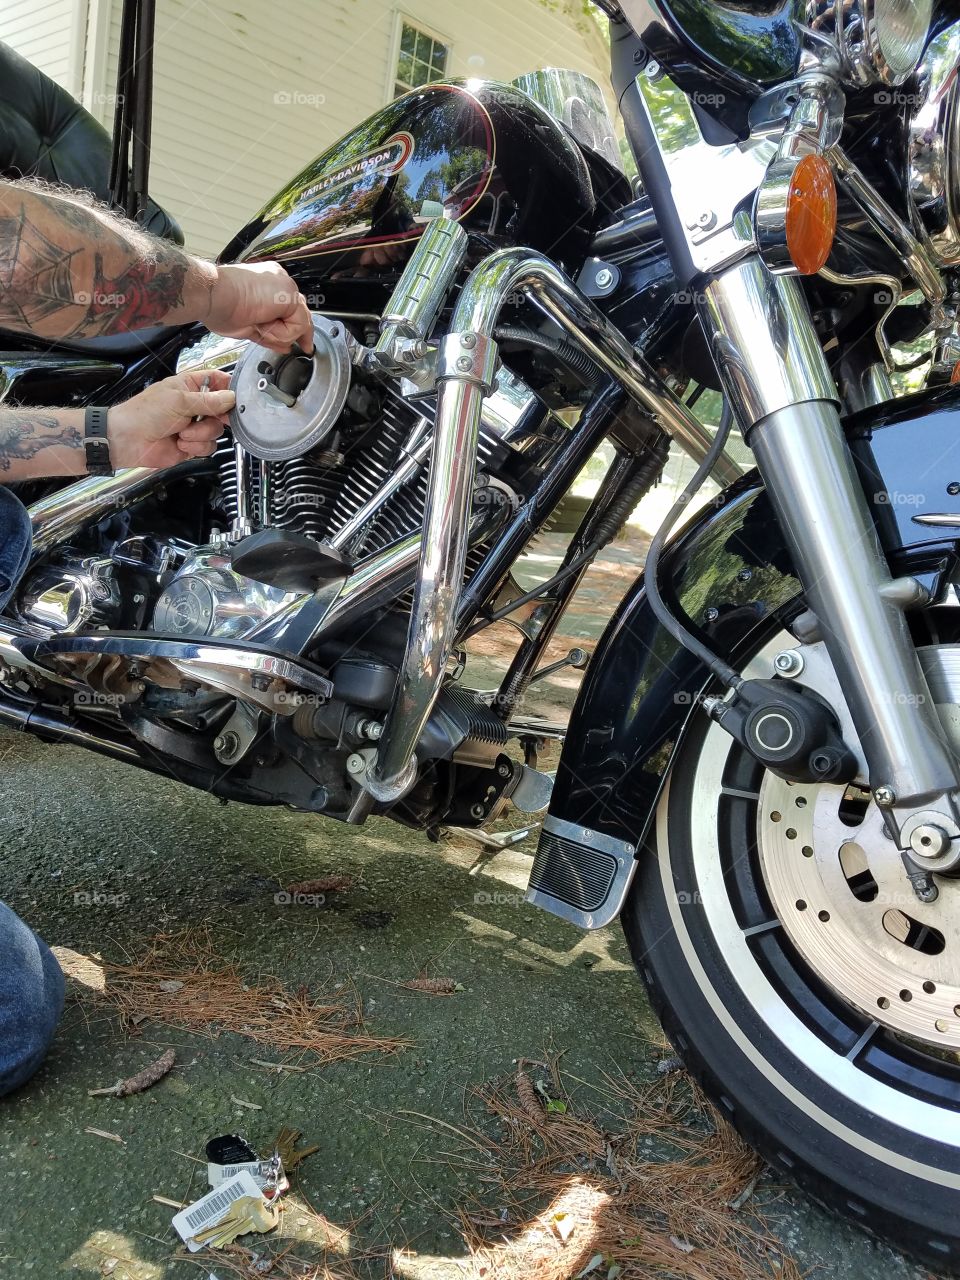 Repairing Harley Davidson motor.